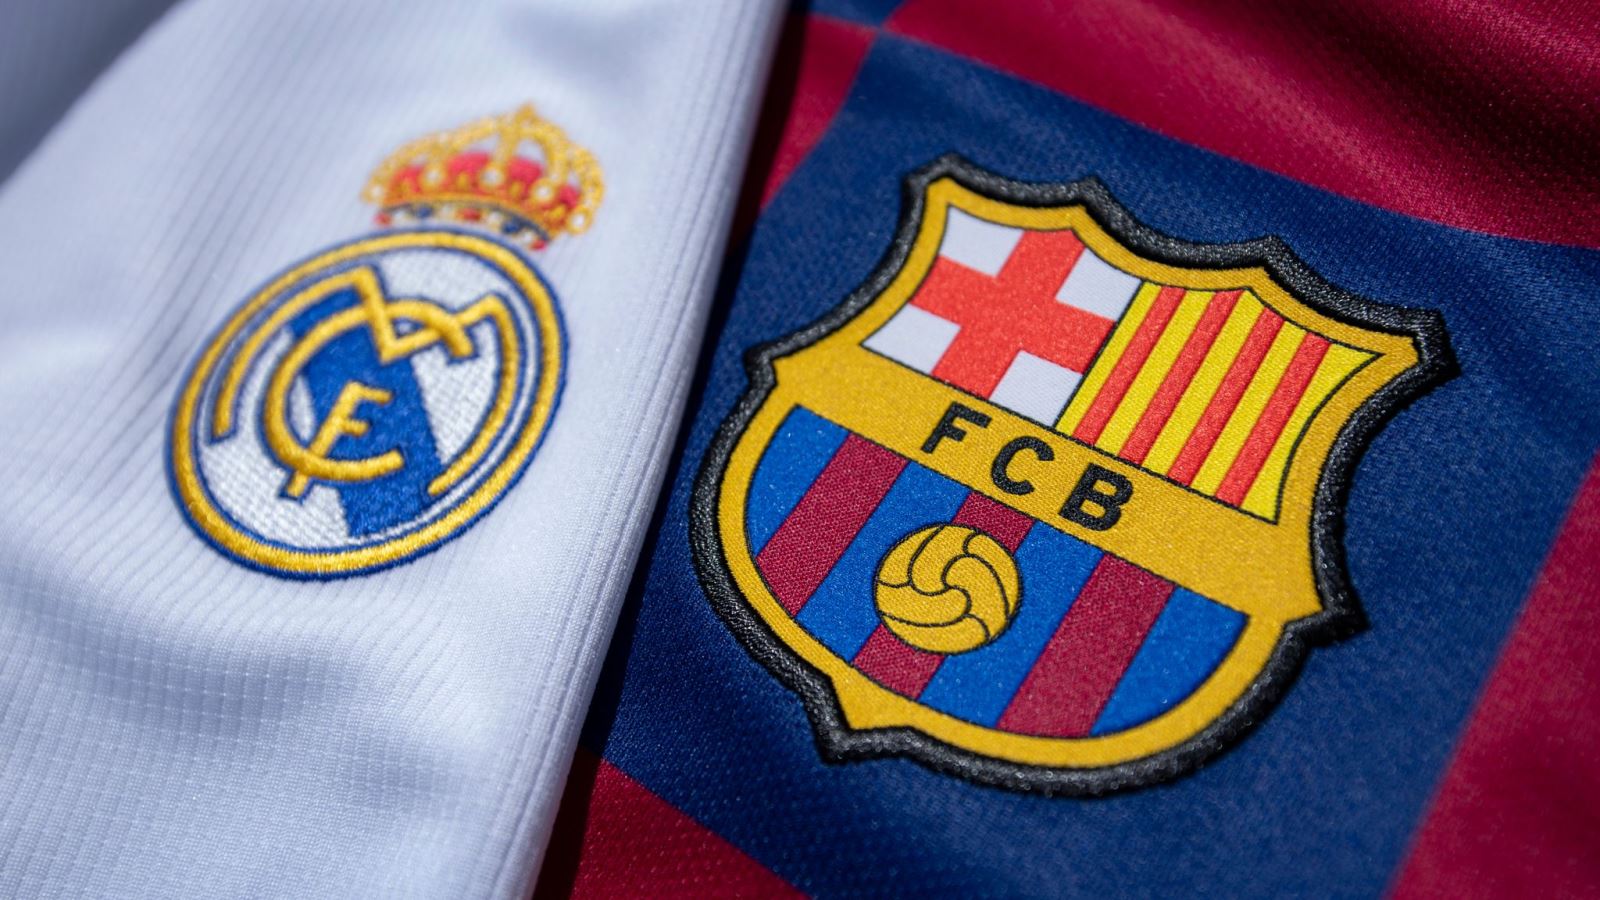 Hai đội Barca vs Real thường xuyên gặp nhau trong các giải đấu lớn nhỏ